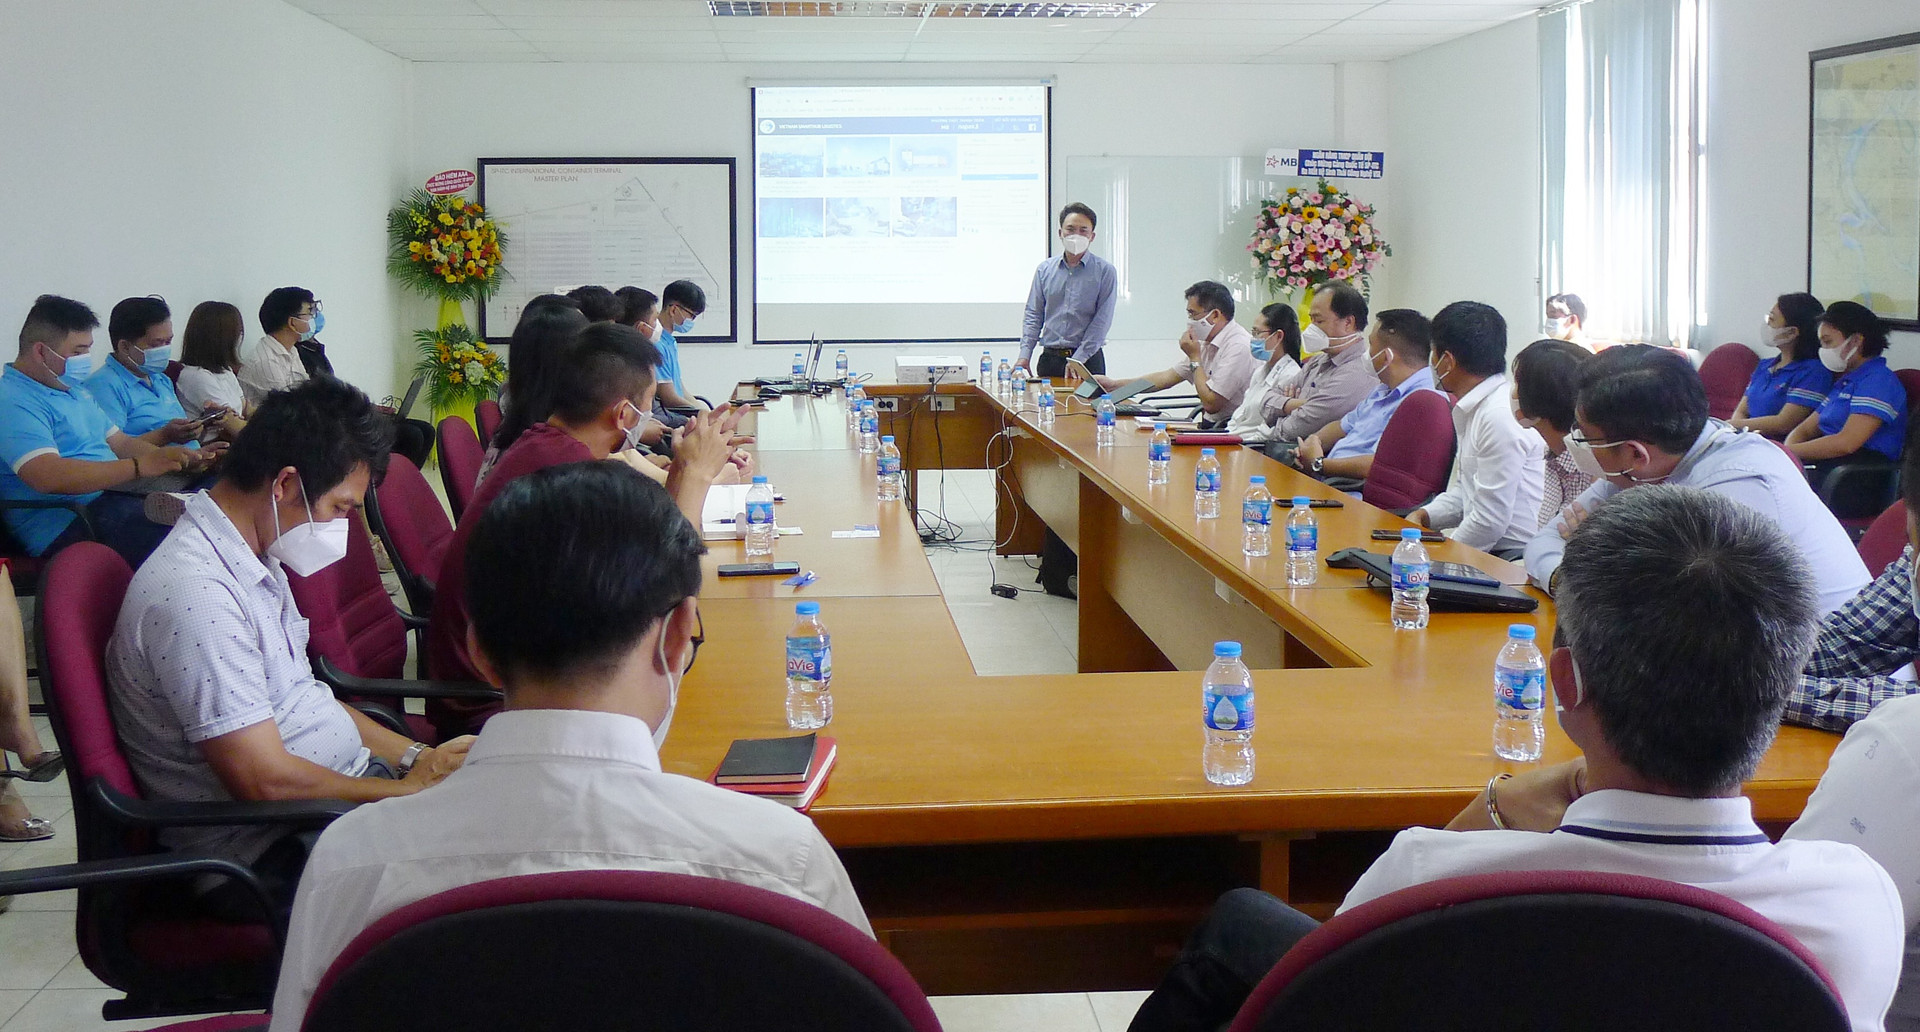 Lễ ra mắt hệ sinh thái Vietnam Smarthub Logistics (VSL) diễn ra tại cảng container quốc tế SP-ITC